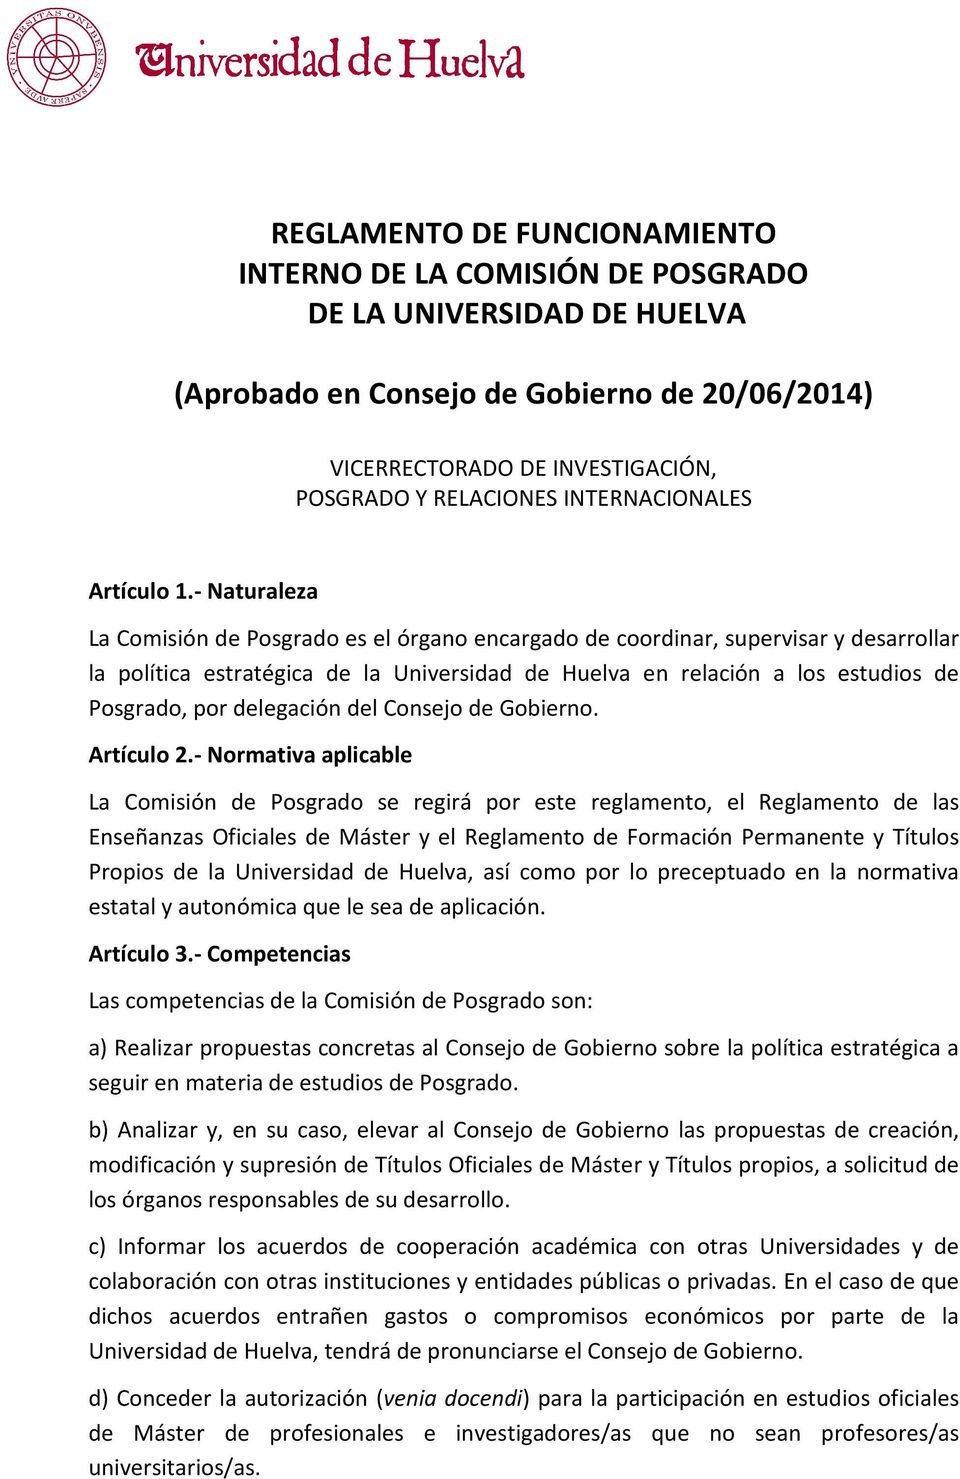 - Naturaleza La Comisión de Posgrado es el órgano encargado de coordinar, supervisar y desarrollar la política estratégica de la Universidad de Huelva en relación a los estudios de Posgrado, por